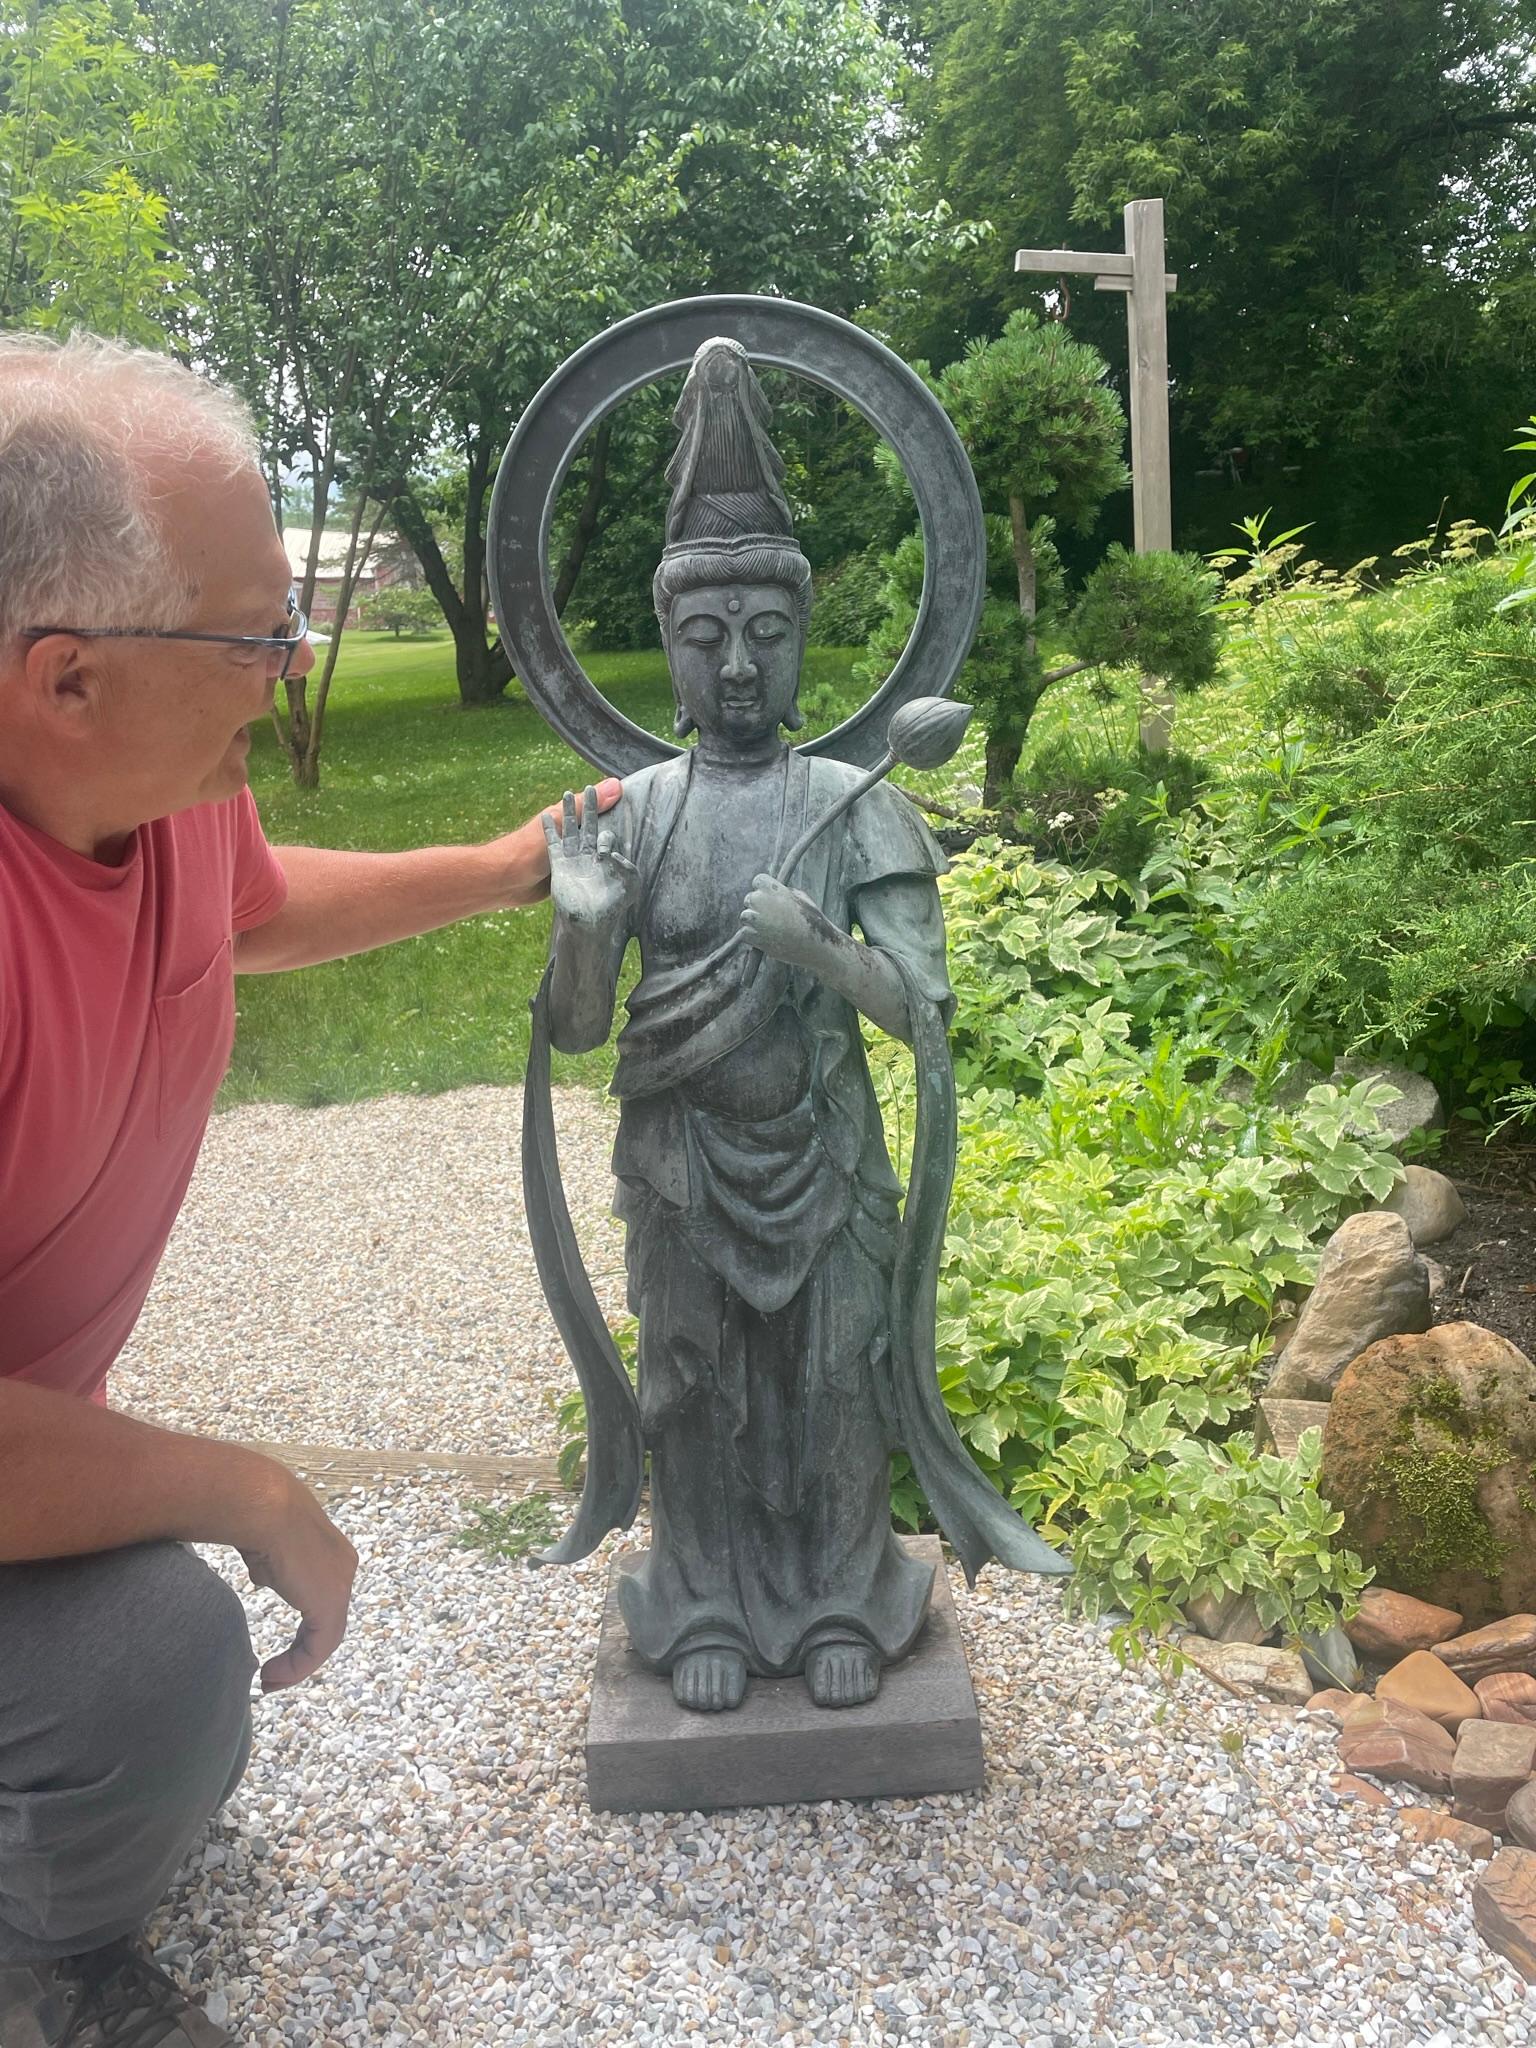 Un bon choix pour le jardin ou une exposition spéciale dans une galerie d'intérieur

Japon, un élégant Kanon Maitreya ou Guan Yin debout, finement moulé en bronze antique, serrant une branche de lotus - un signe de pureté - et avec une belle